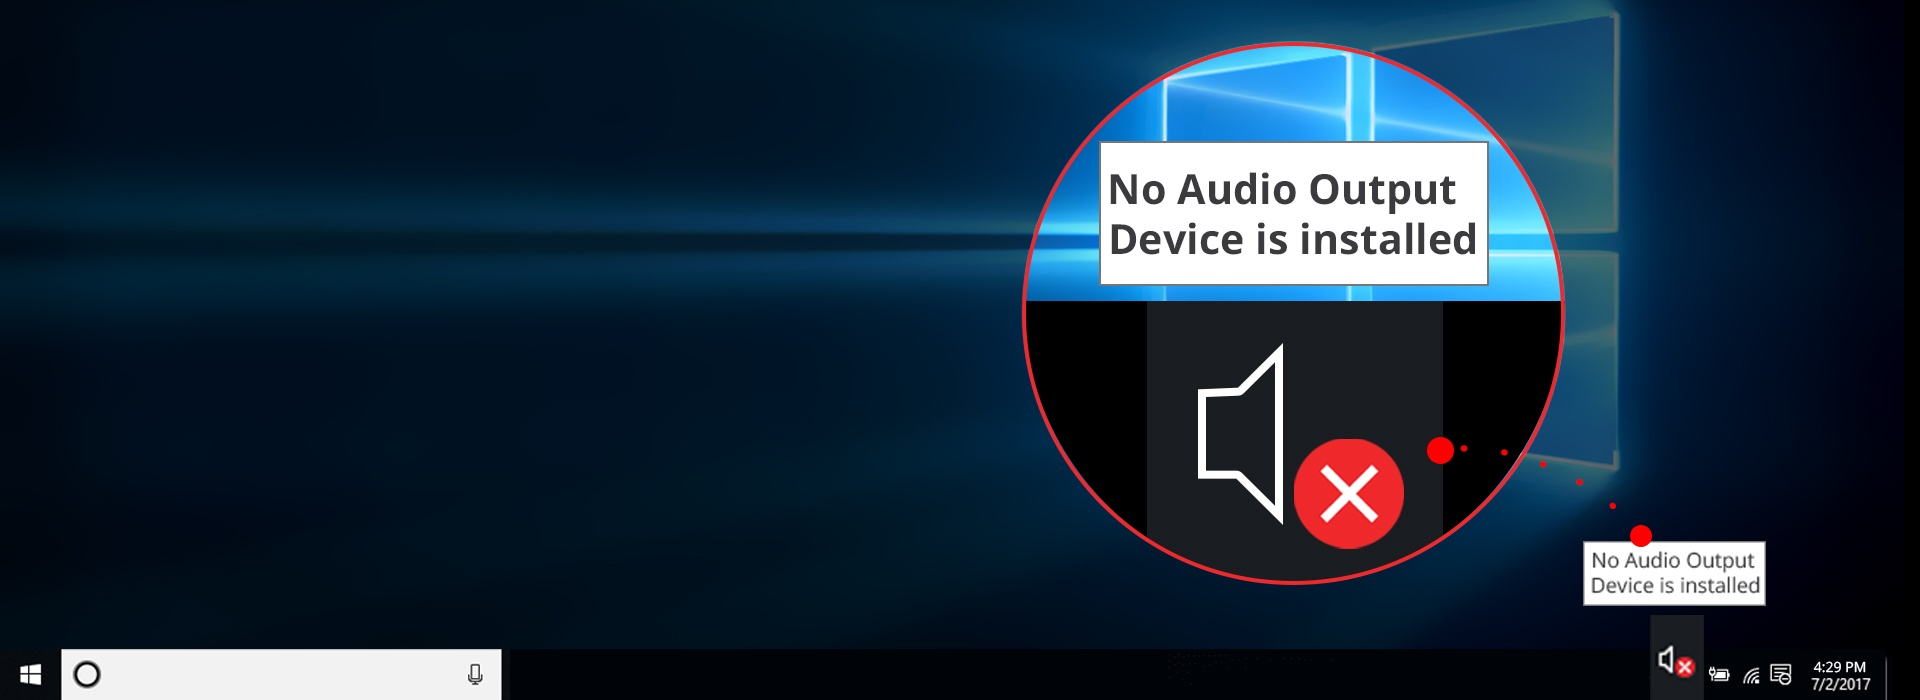 aucun processus de sortie audio n'est installé Windows 7 asus